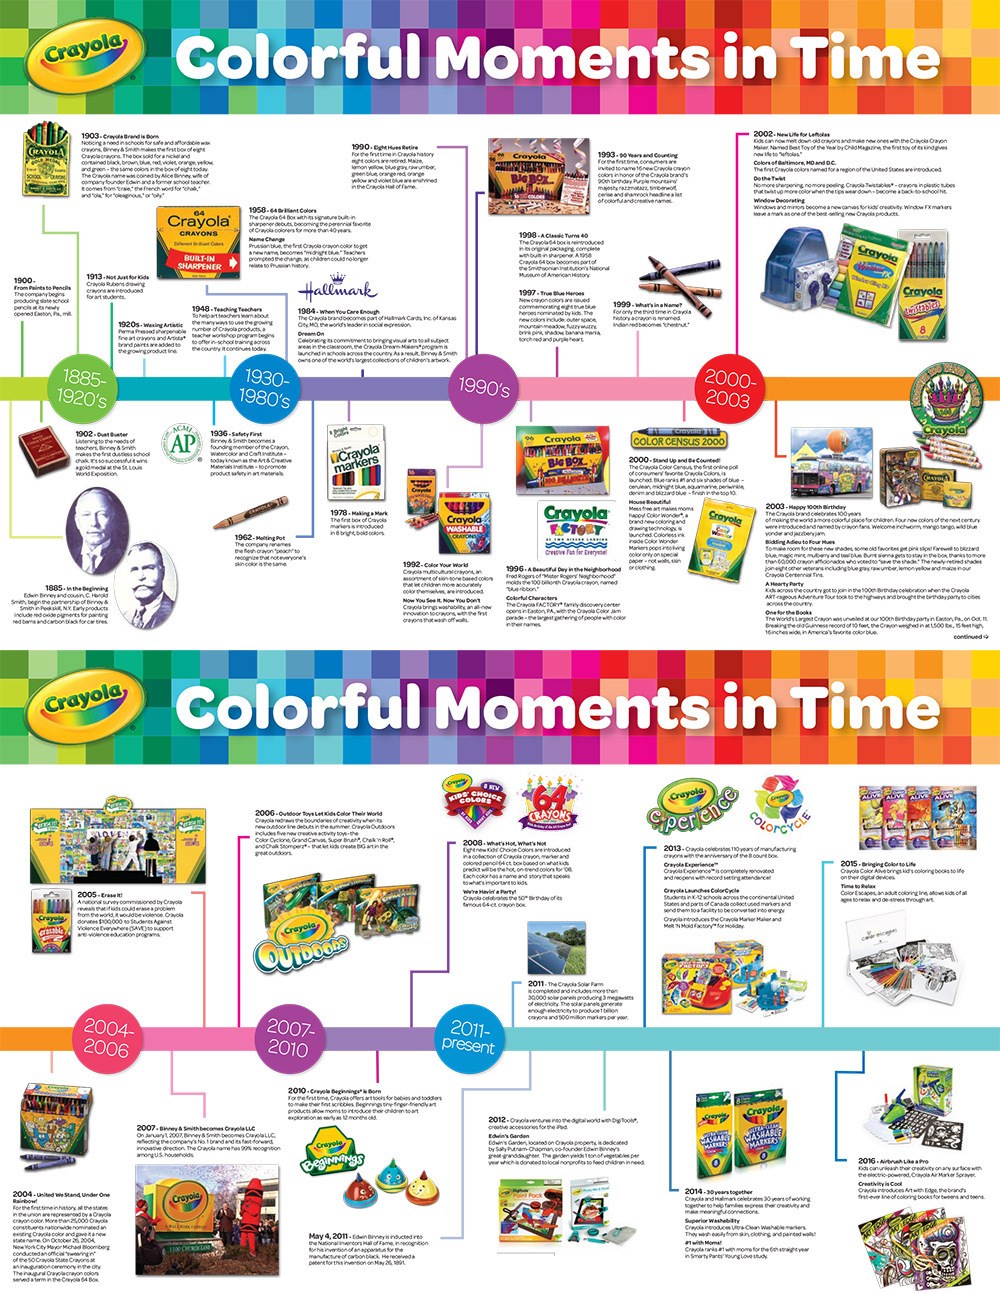 A Brief Yet Complex Color History Of Crayola Crayons